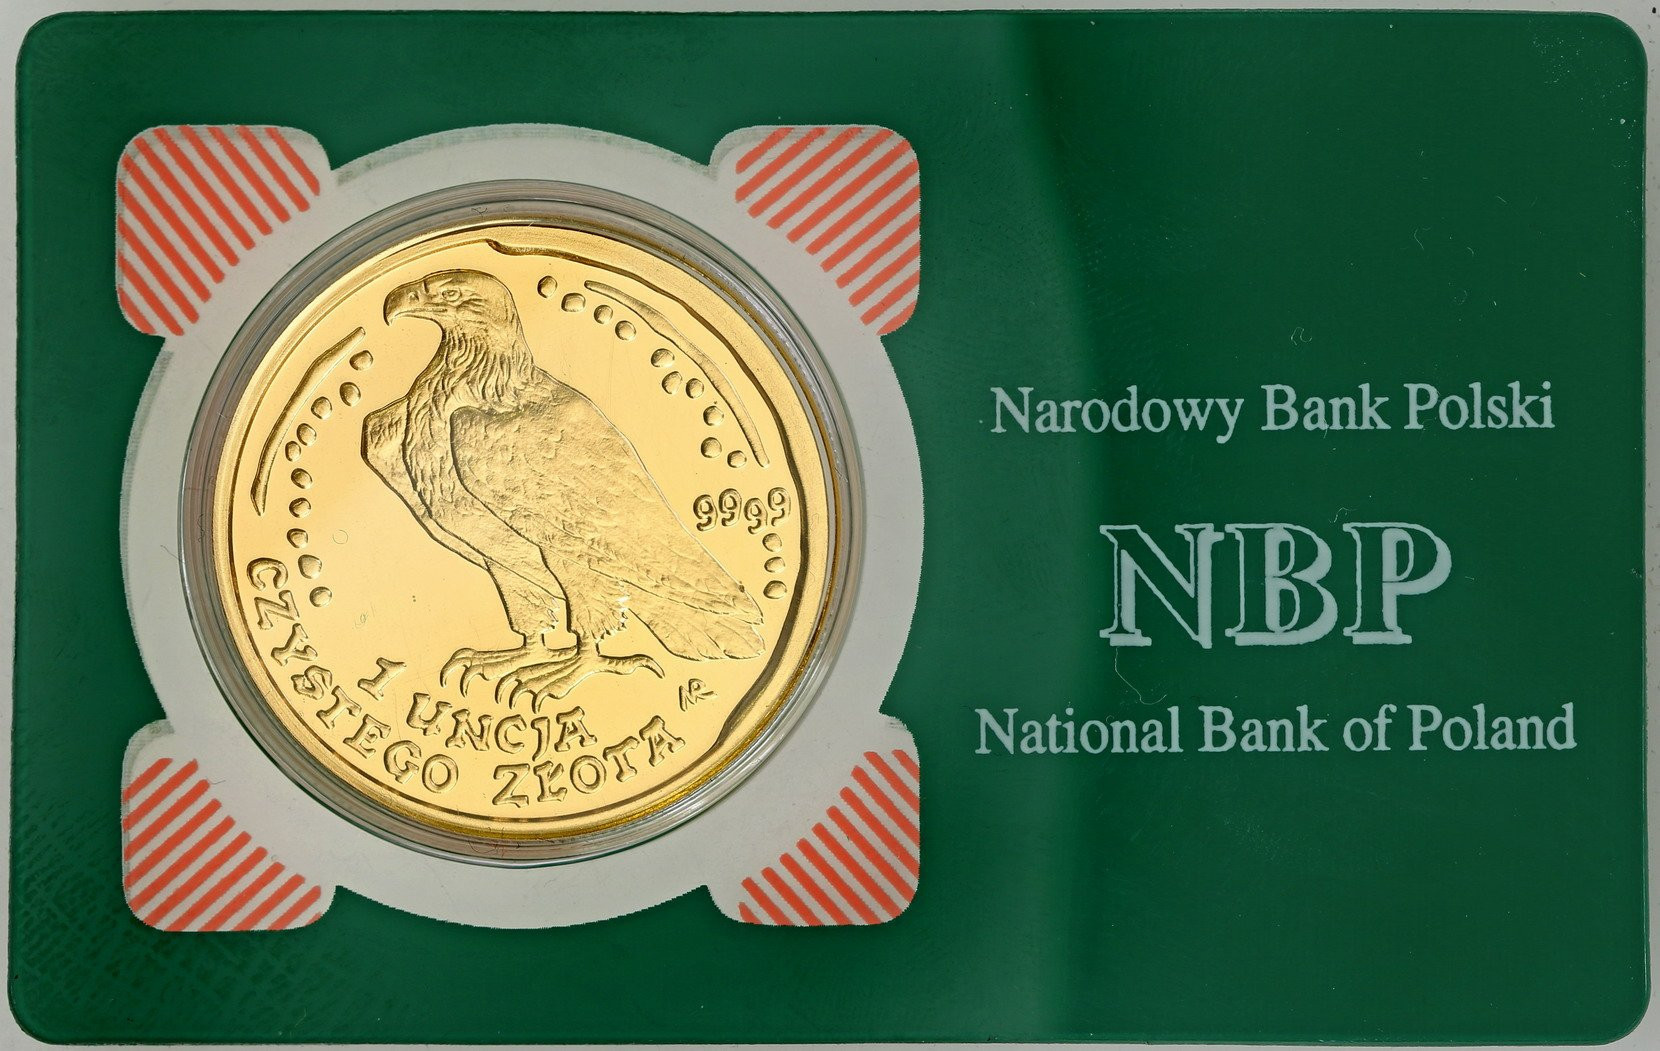 Polska. 500 złotych 1996 Orzeł Bielik (1 UNCJA złota)